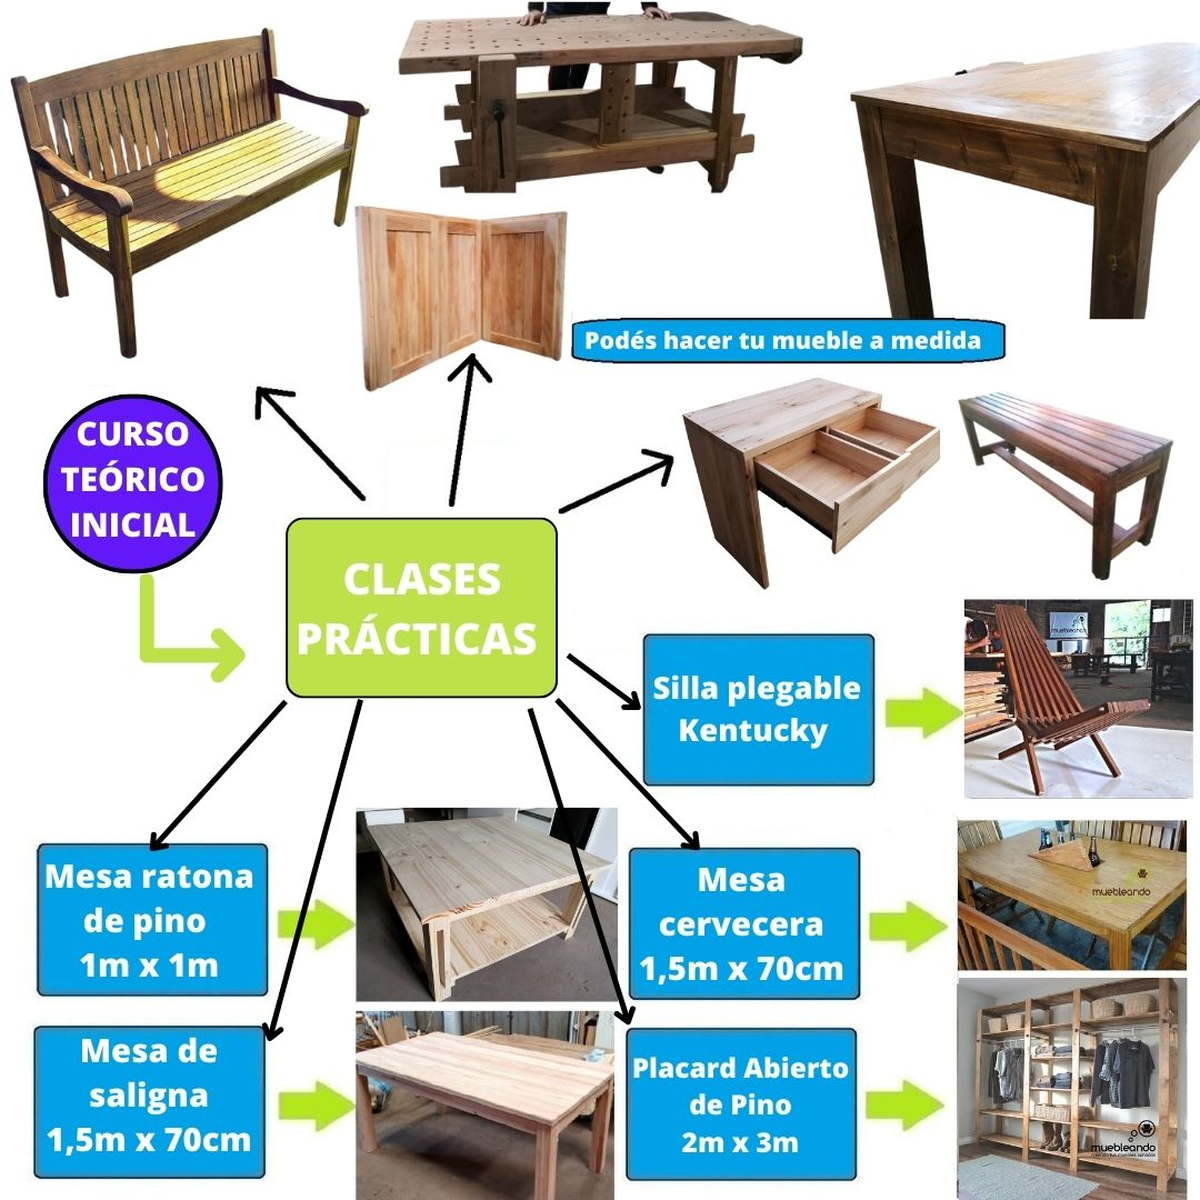 Opciones de muebles de madera propuestos, carpinteria de madera